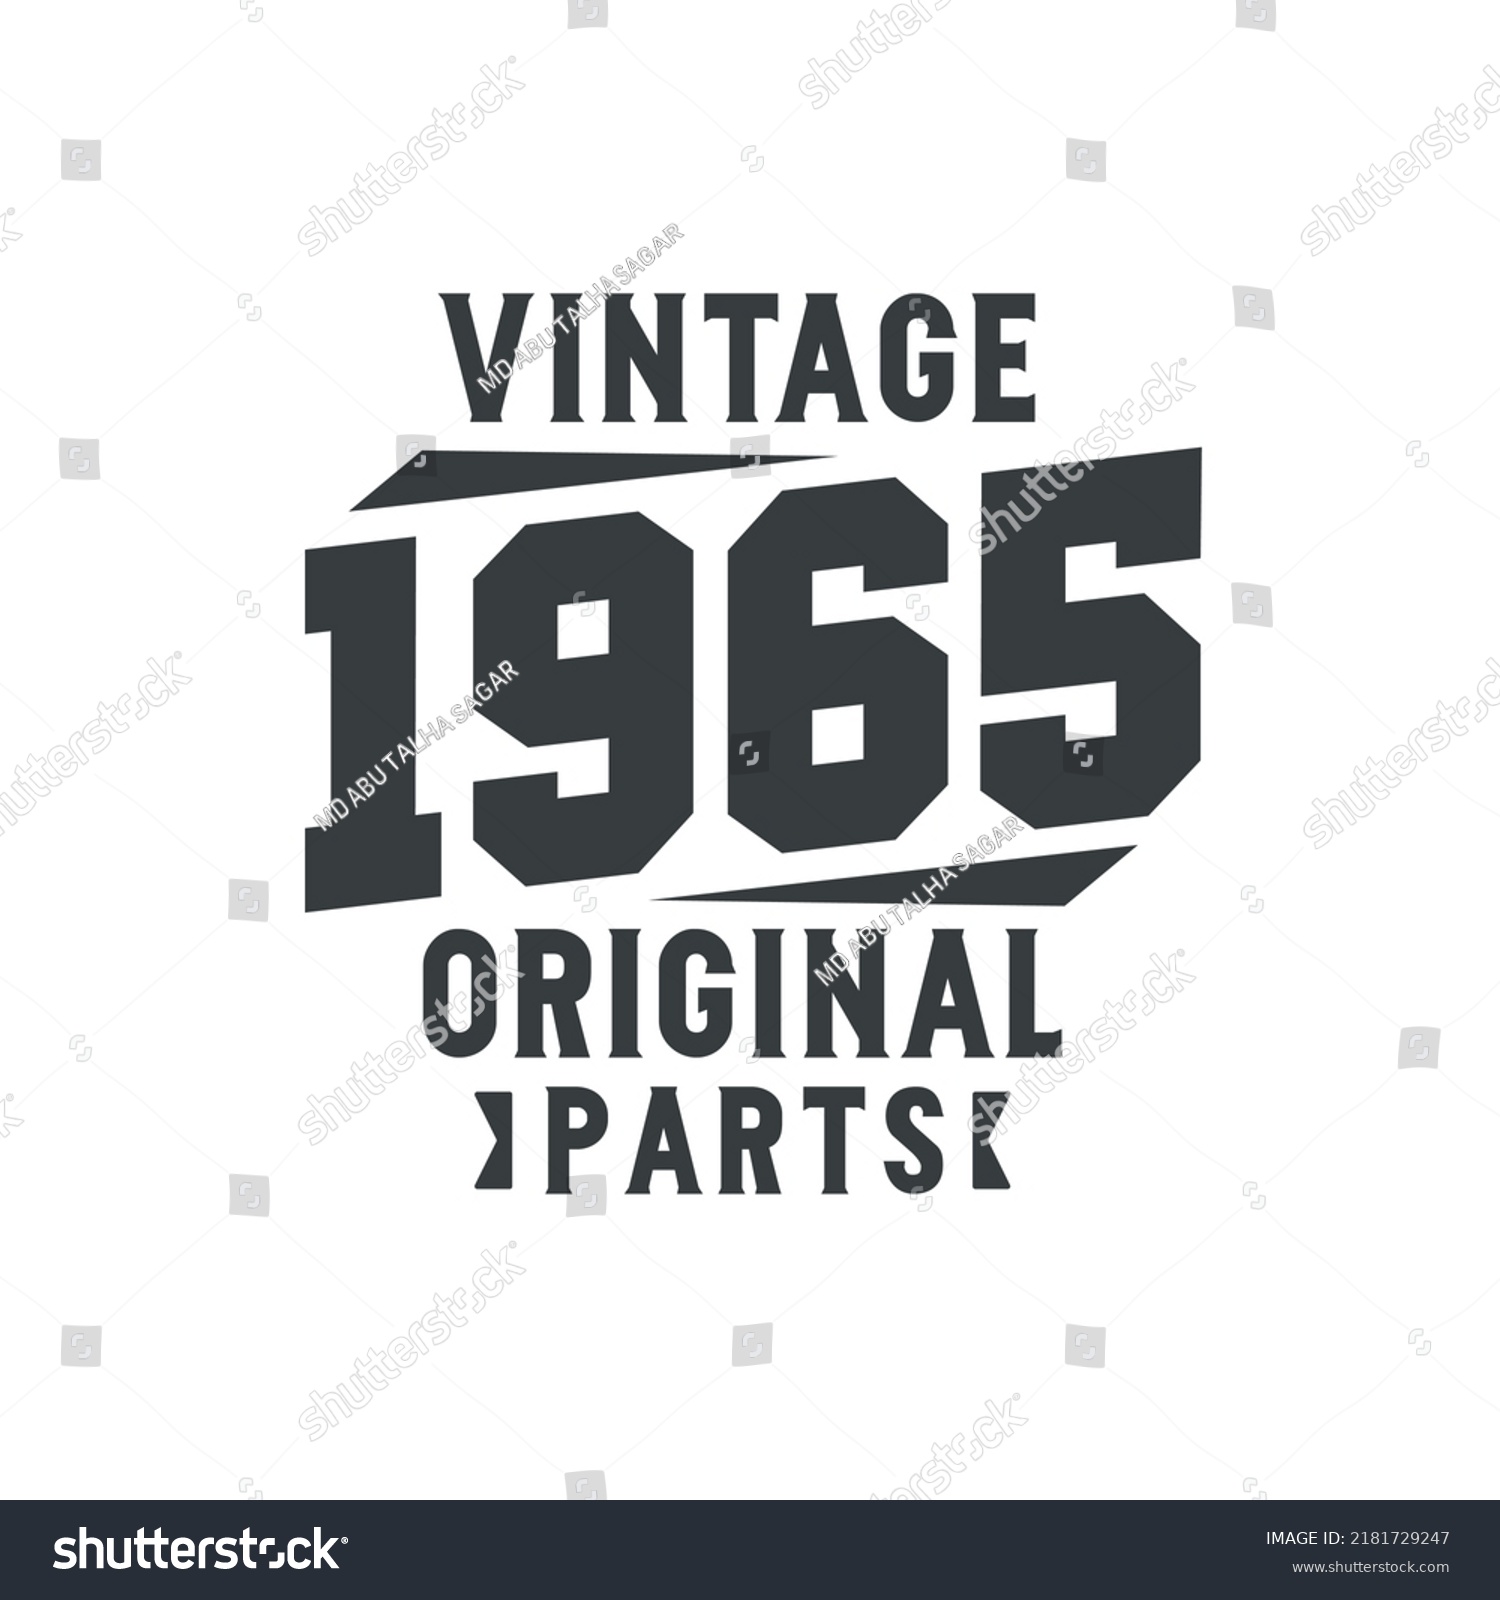 SVG of Born in 1965 Vintage Retro Birthday, Vintage 1965 Original Parts svg